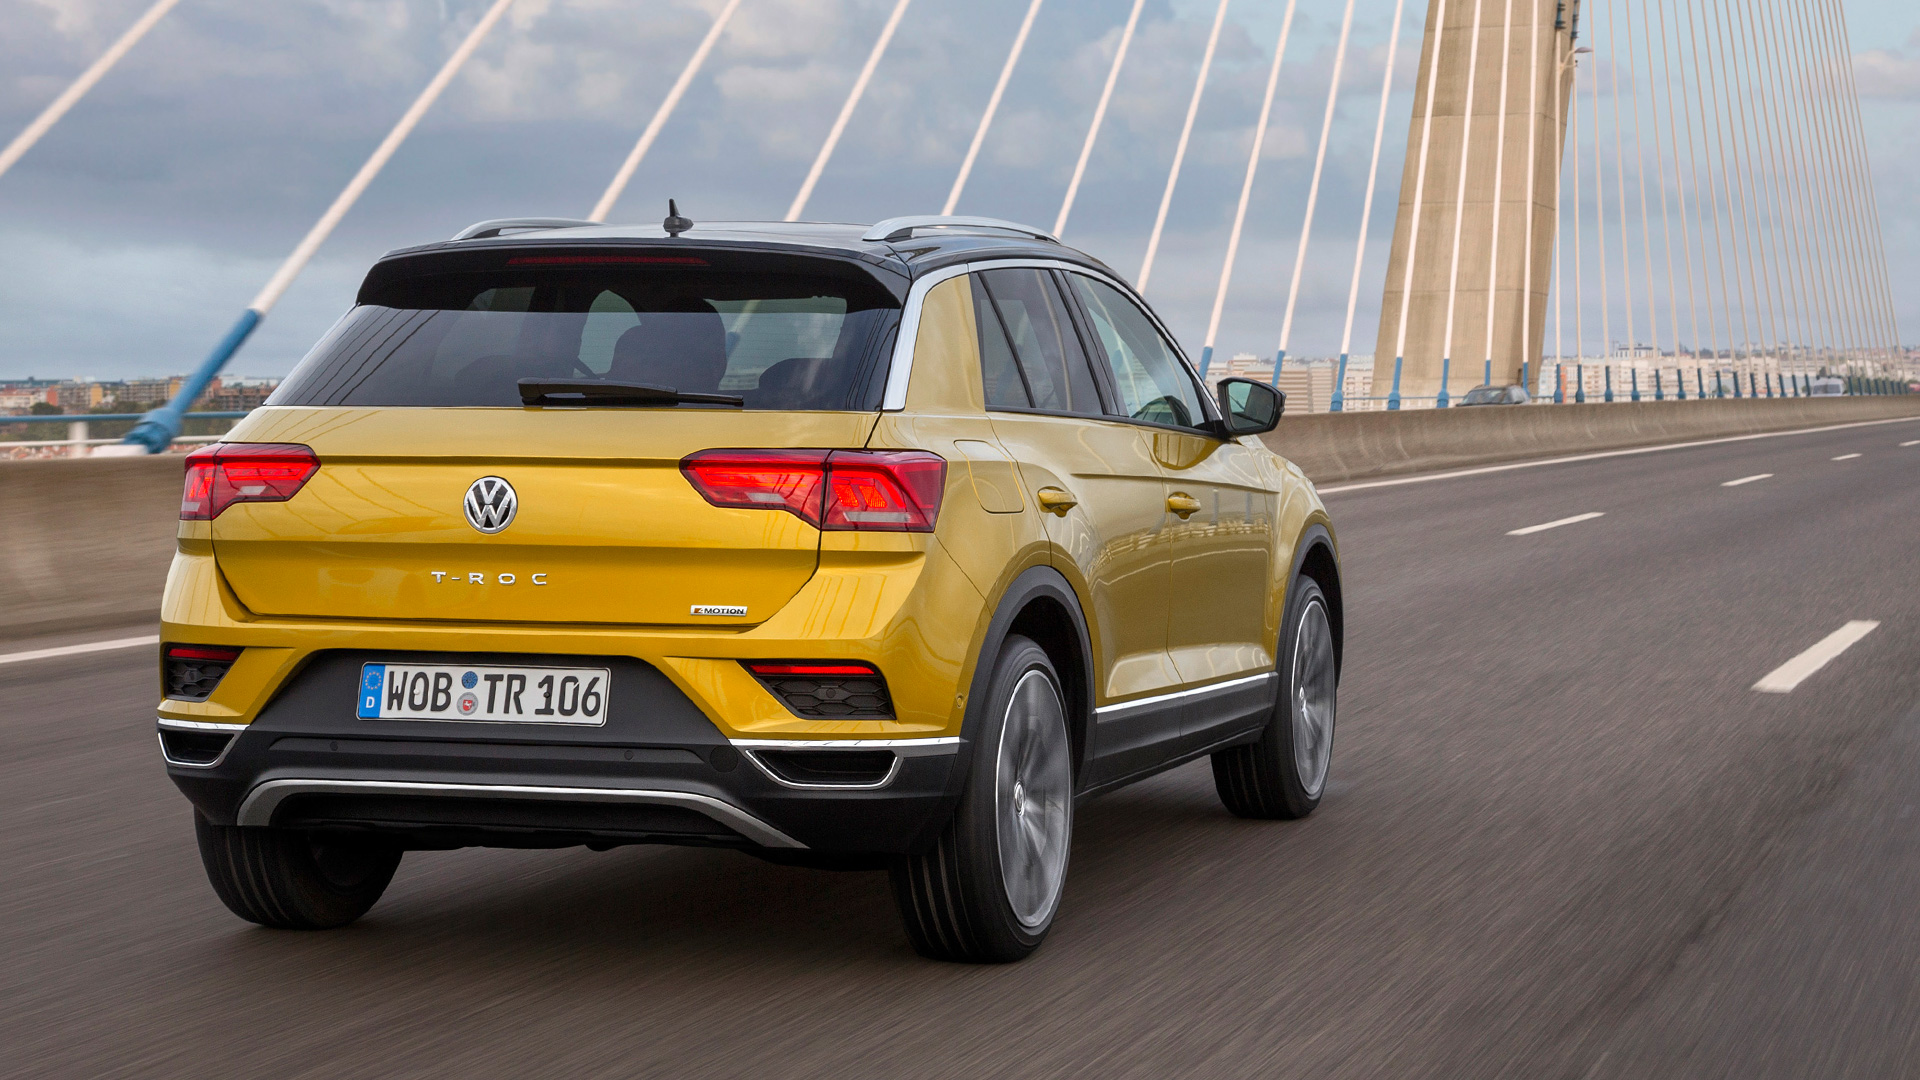 Volkswagen Troc 2019 STD Exterior Car Photos Overdrive